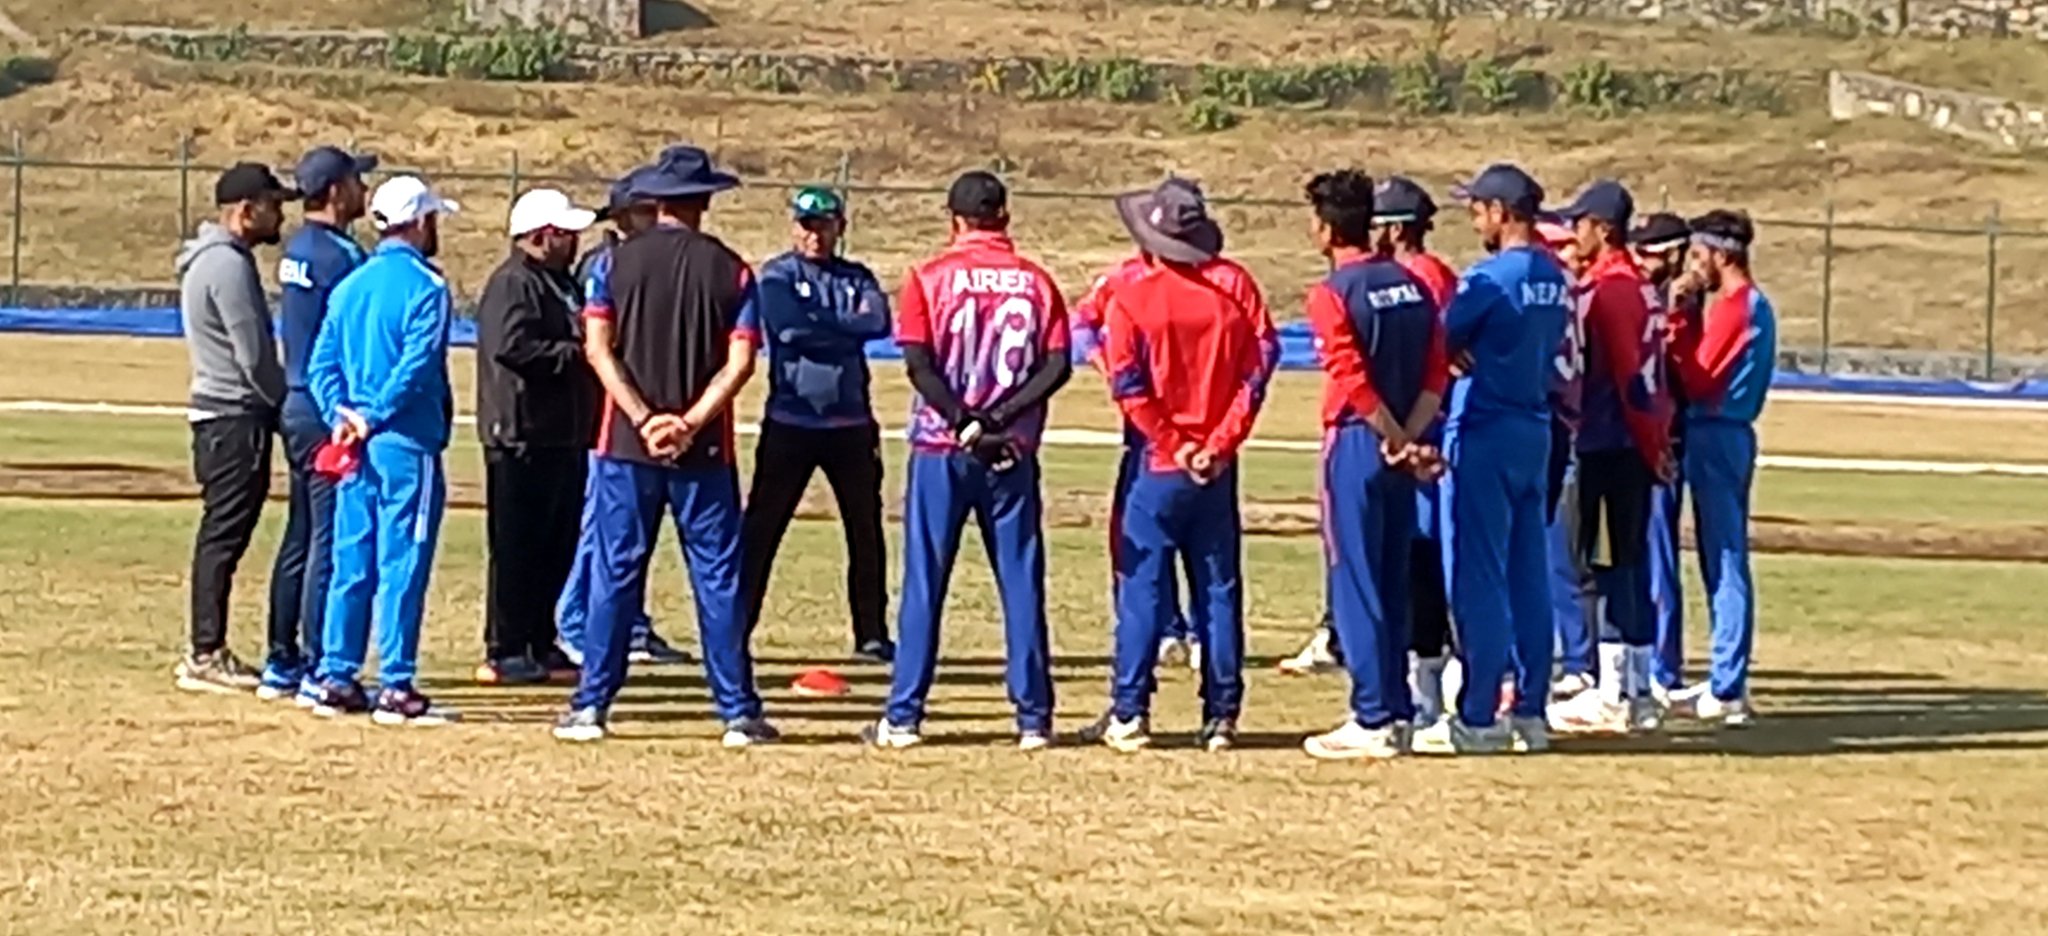 राष्ट्रिय क्रिकेट टिमको बन्द प्रशिक्षण शुरू, केही खेलाडी अनुपस्थित